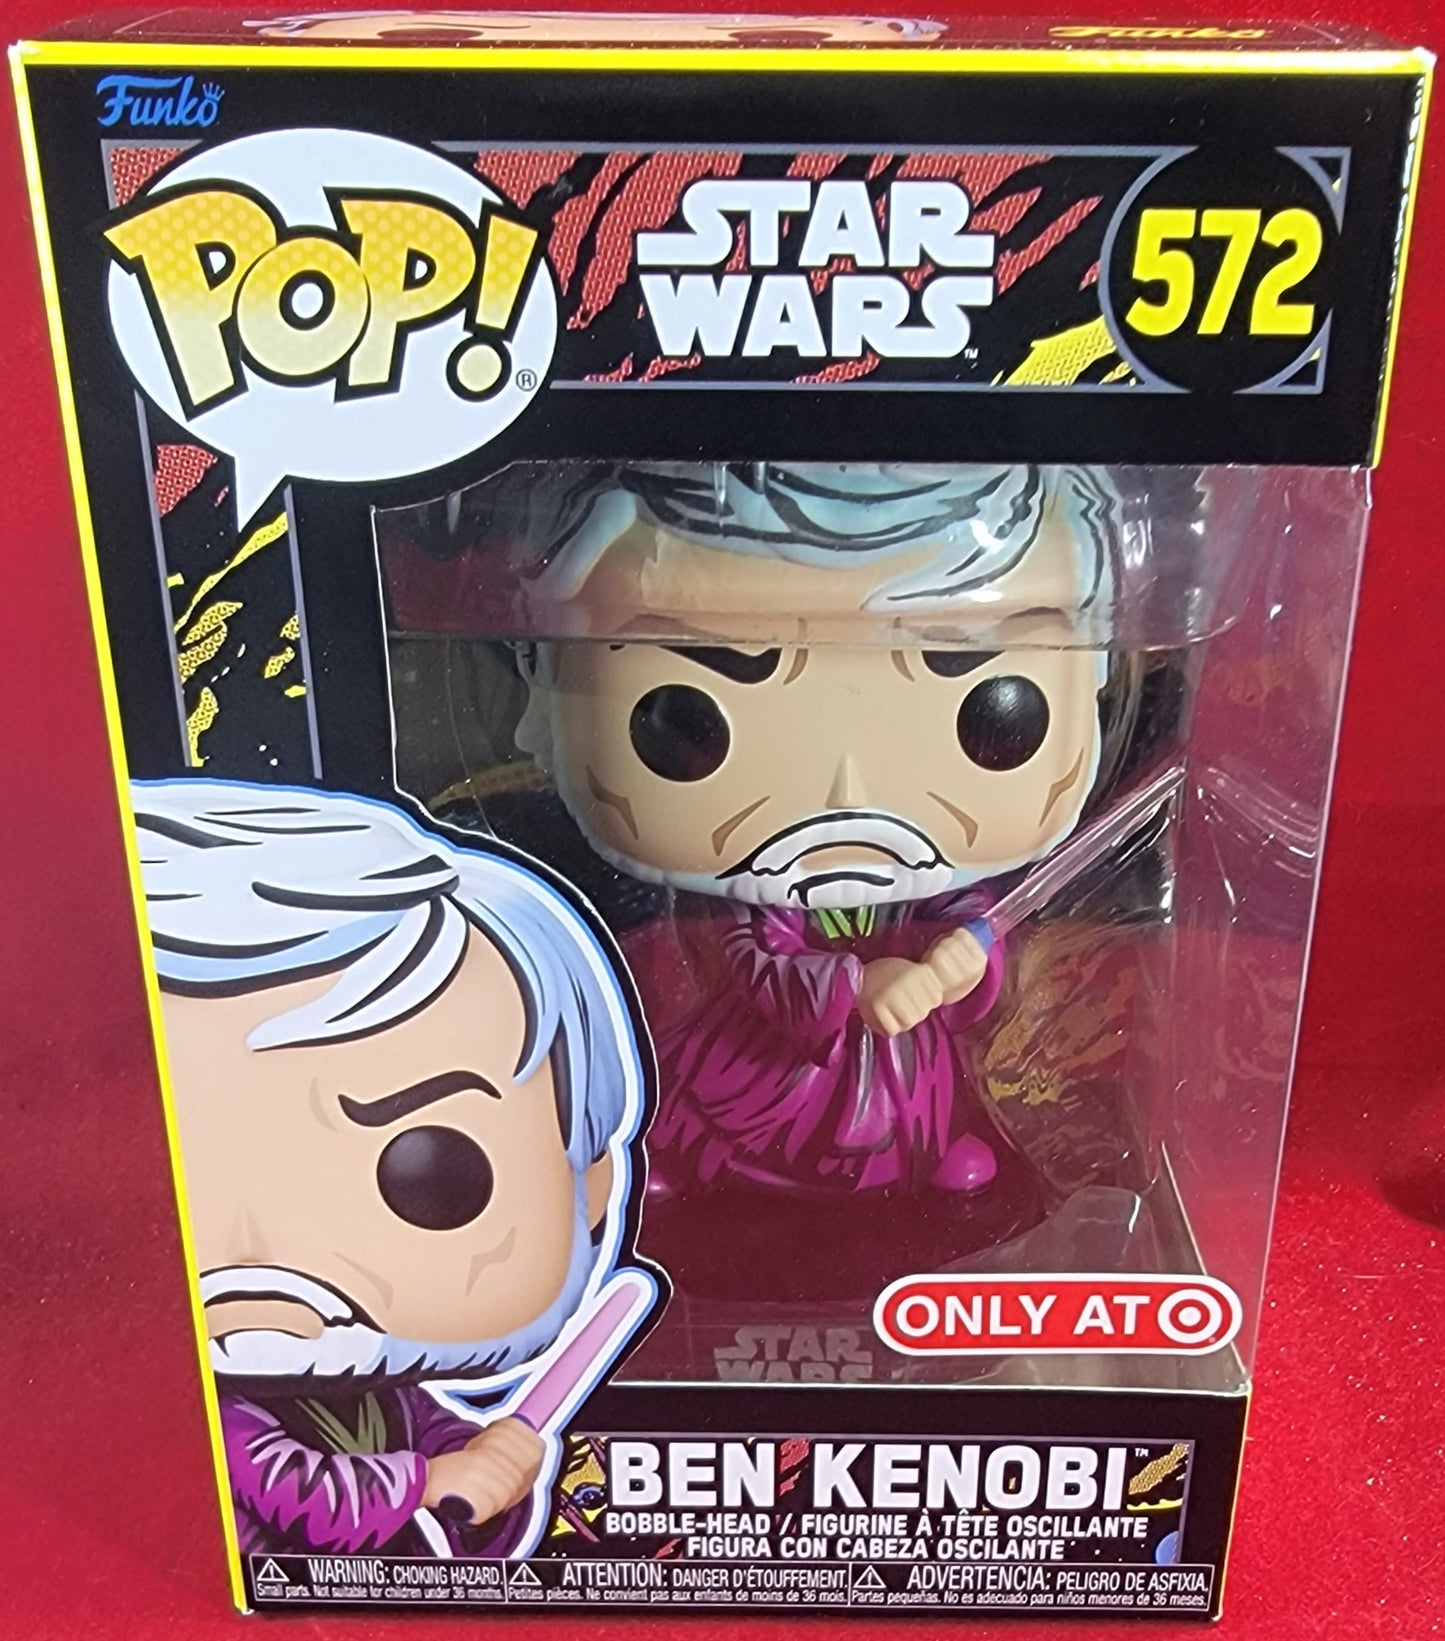 Ben kenobi target exclusive funko # 572 (nib)